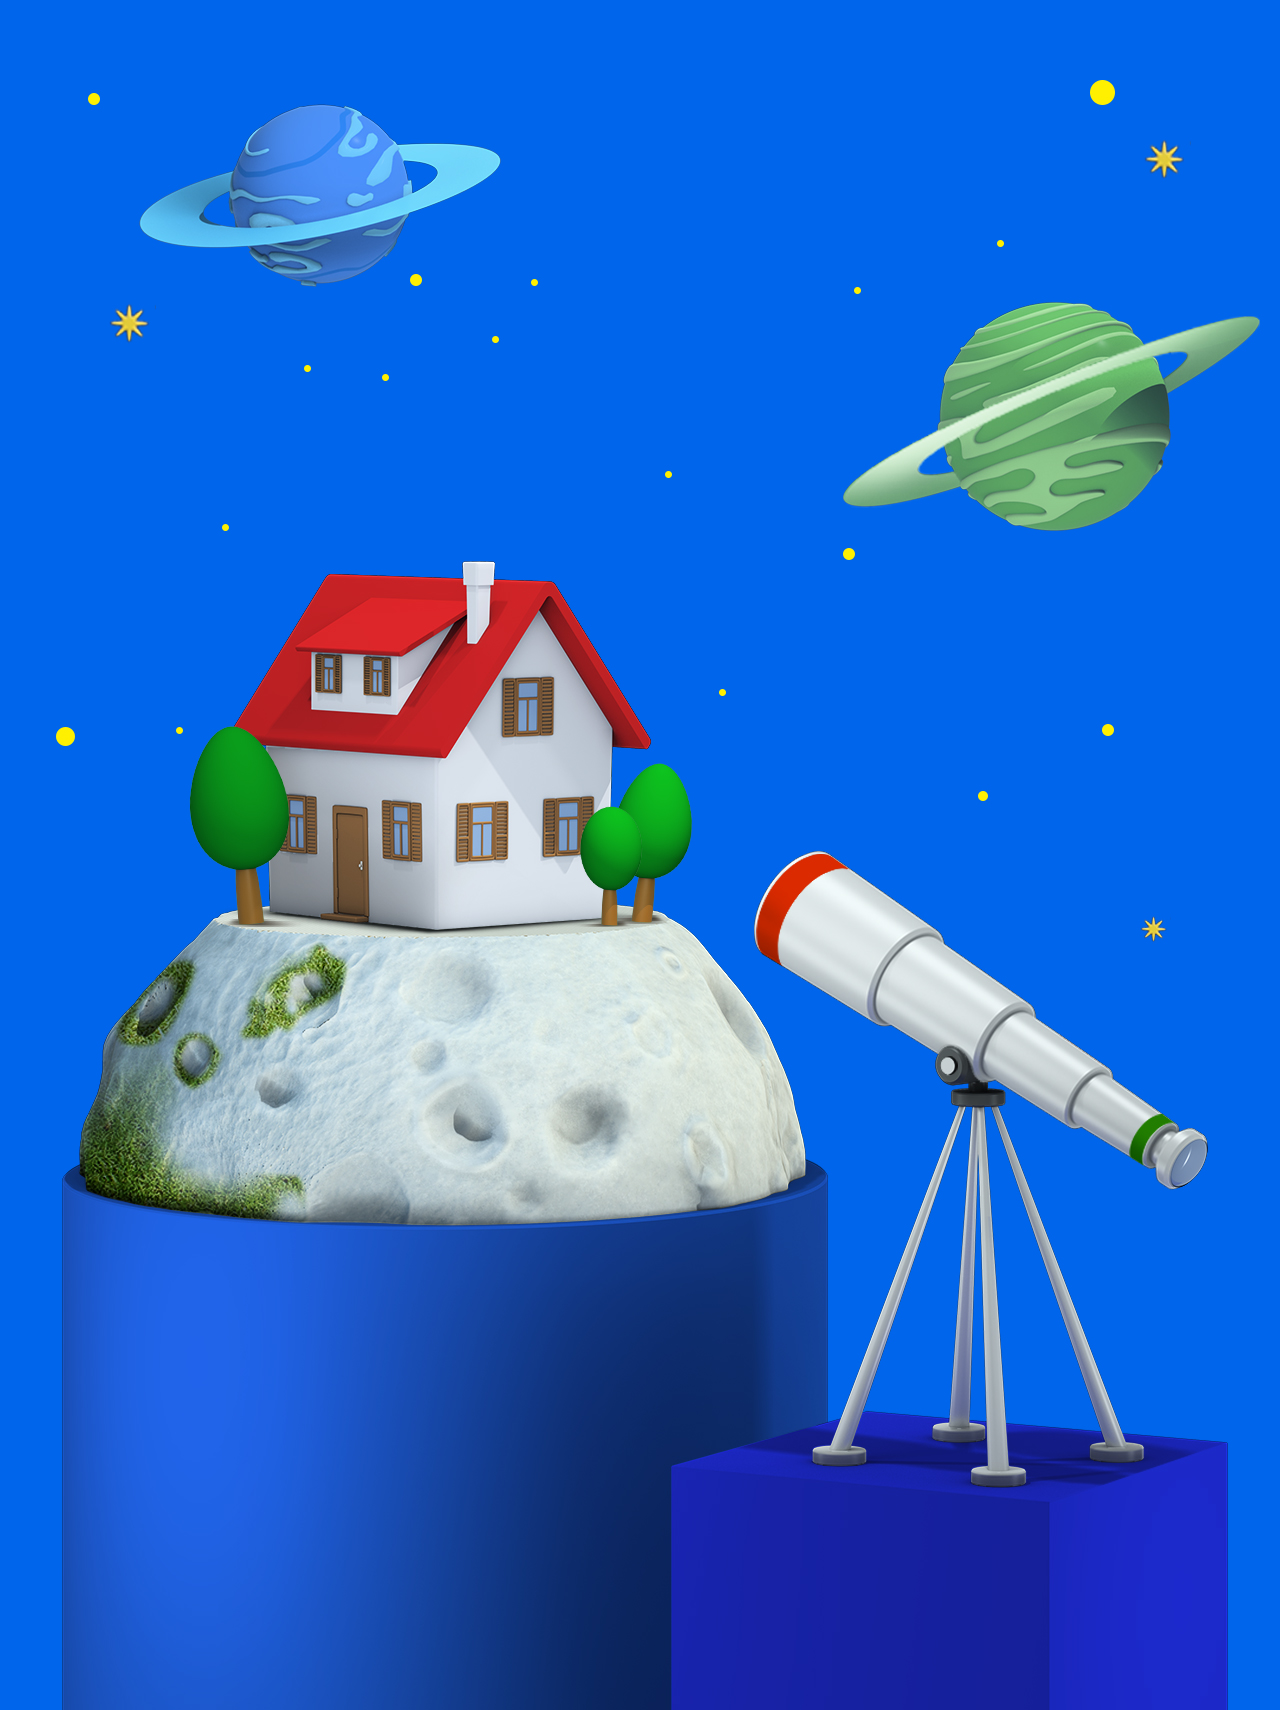 disegno 3D che raffigura un telescopio puntato su un pianeta su cui è raffigurata una casa e su un cielo punteggiato di stelle e pianeti